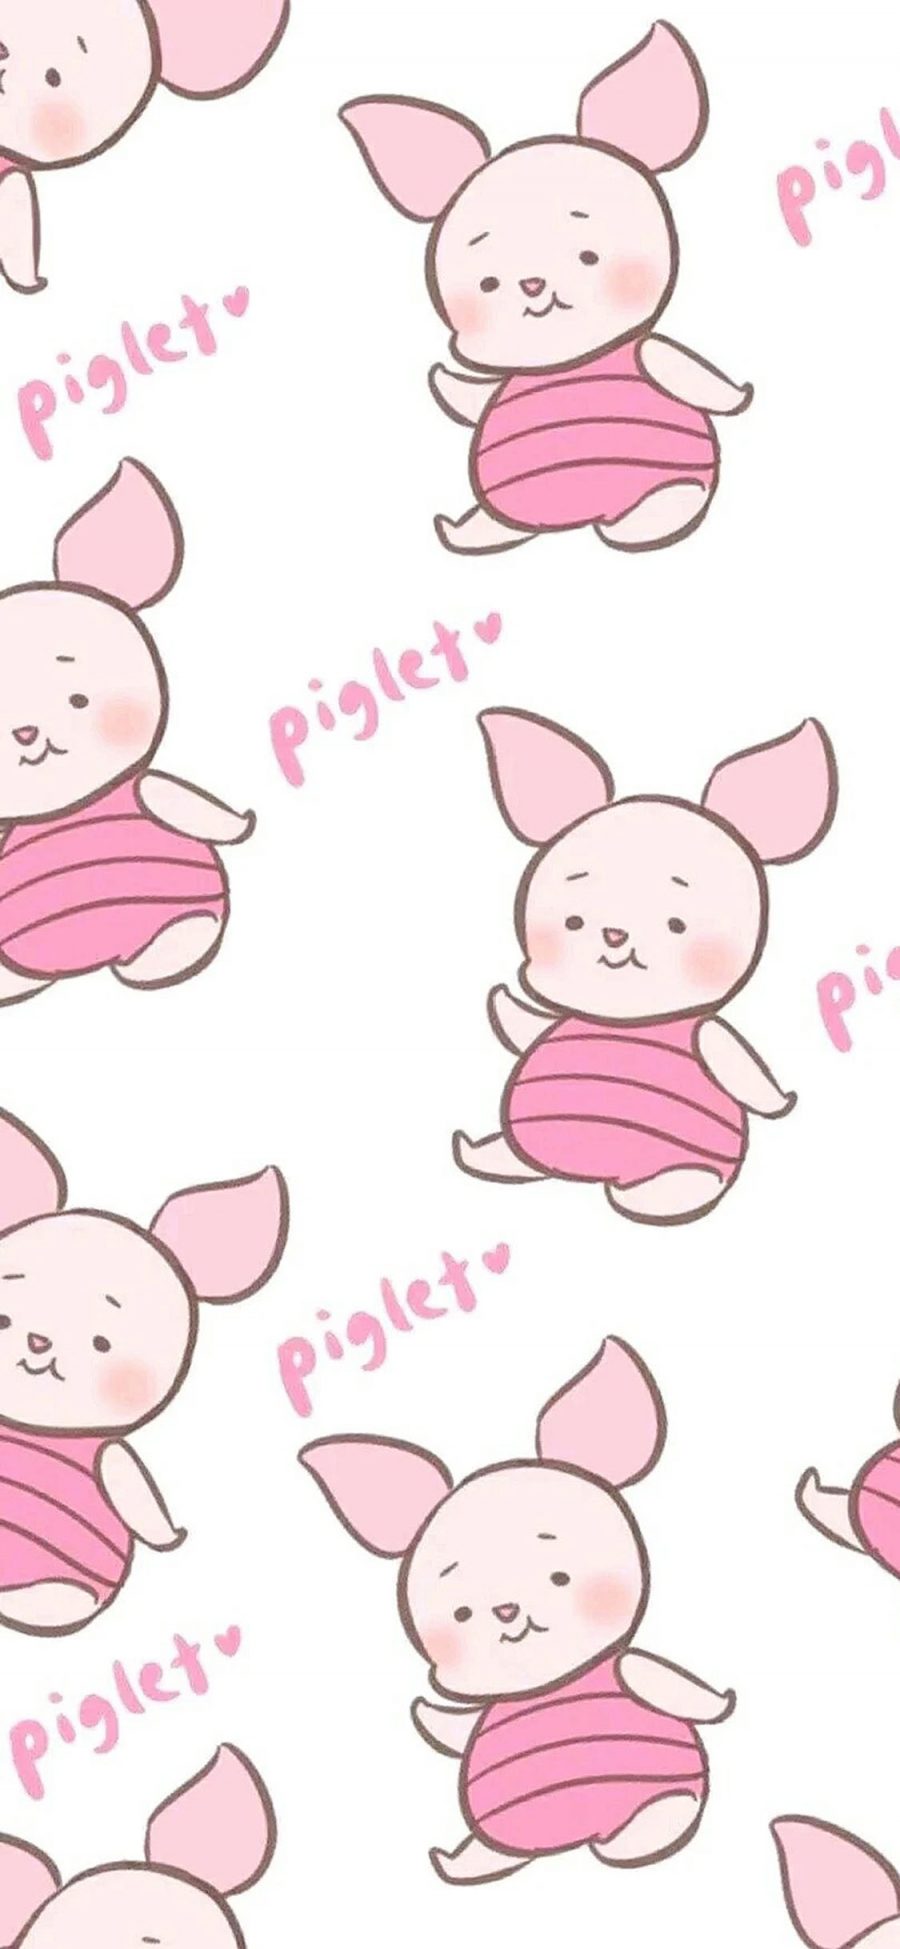 [2436×1125]维尼熊 小猪皮杰 piglet 苹果手机动漫壁纸图片